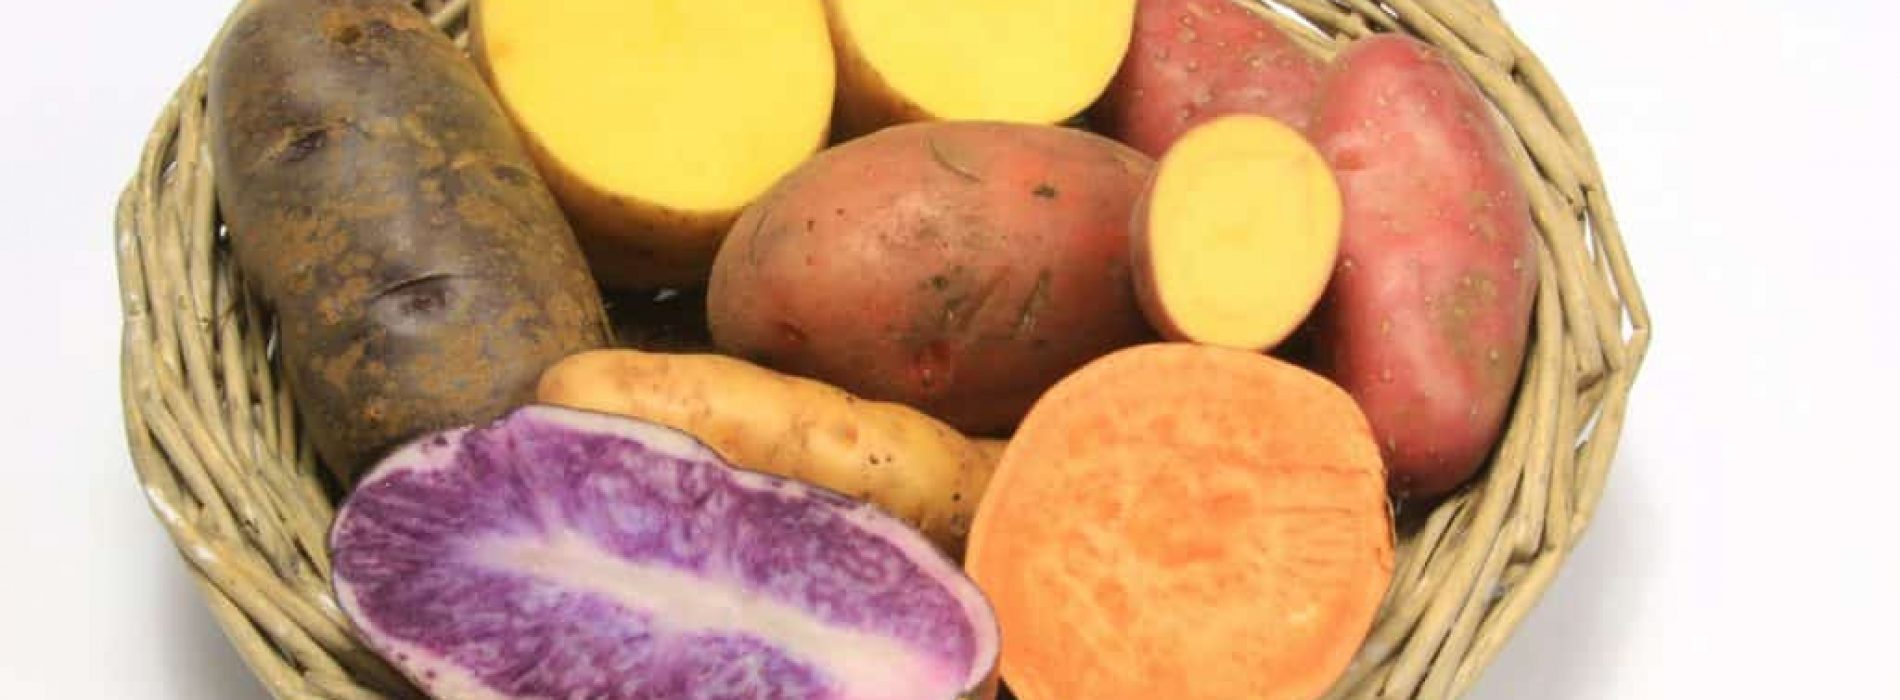 Vijf redenen om meer zoete aardappelen te eten